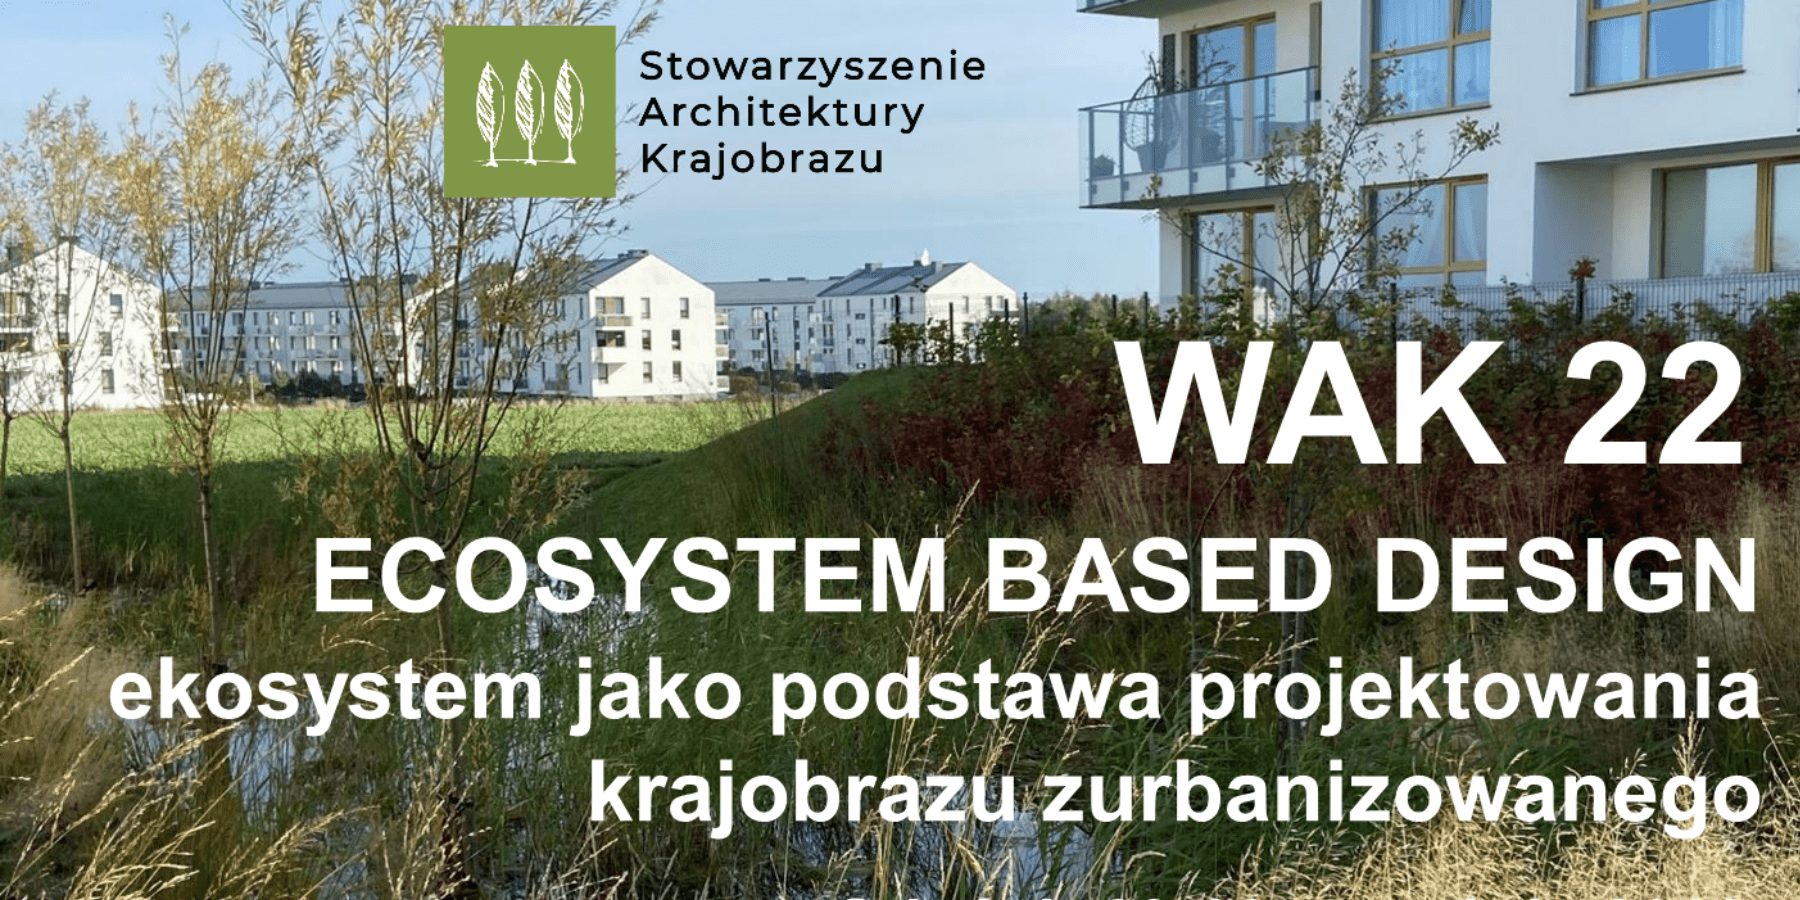 Projektowanie w zgodzie z ekosystemem - Międzynarodowa Konferencja WAK2022 już wkrótce